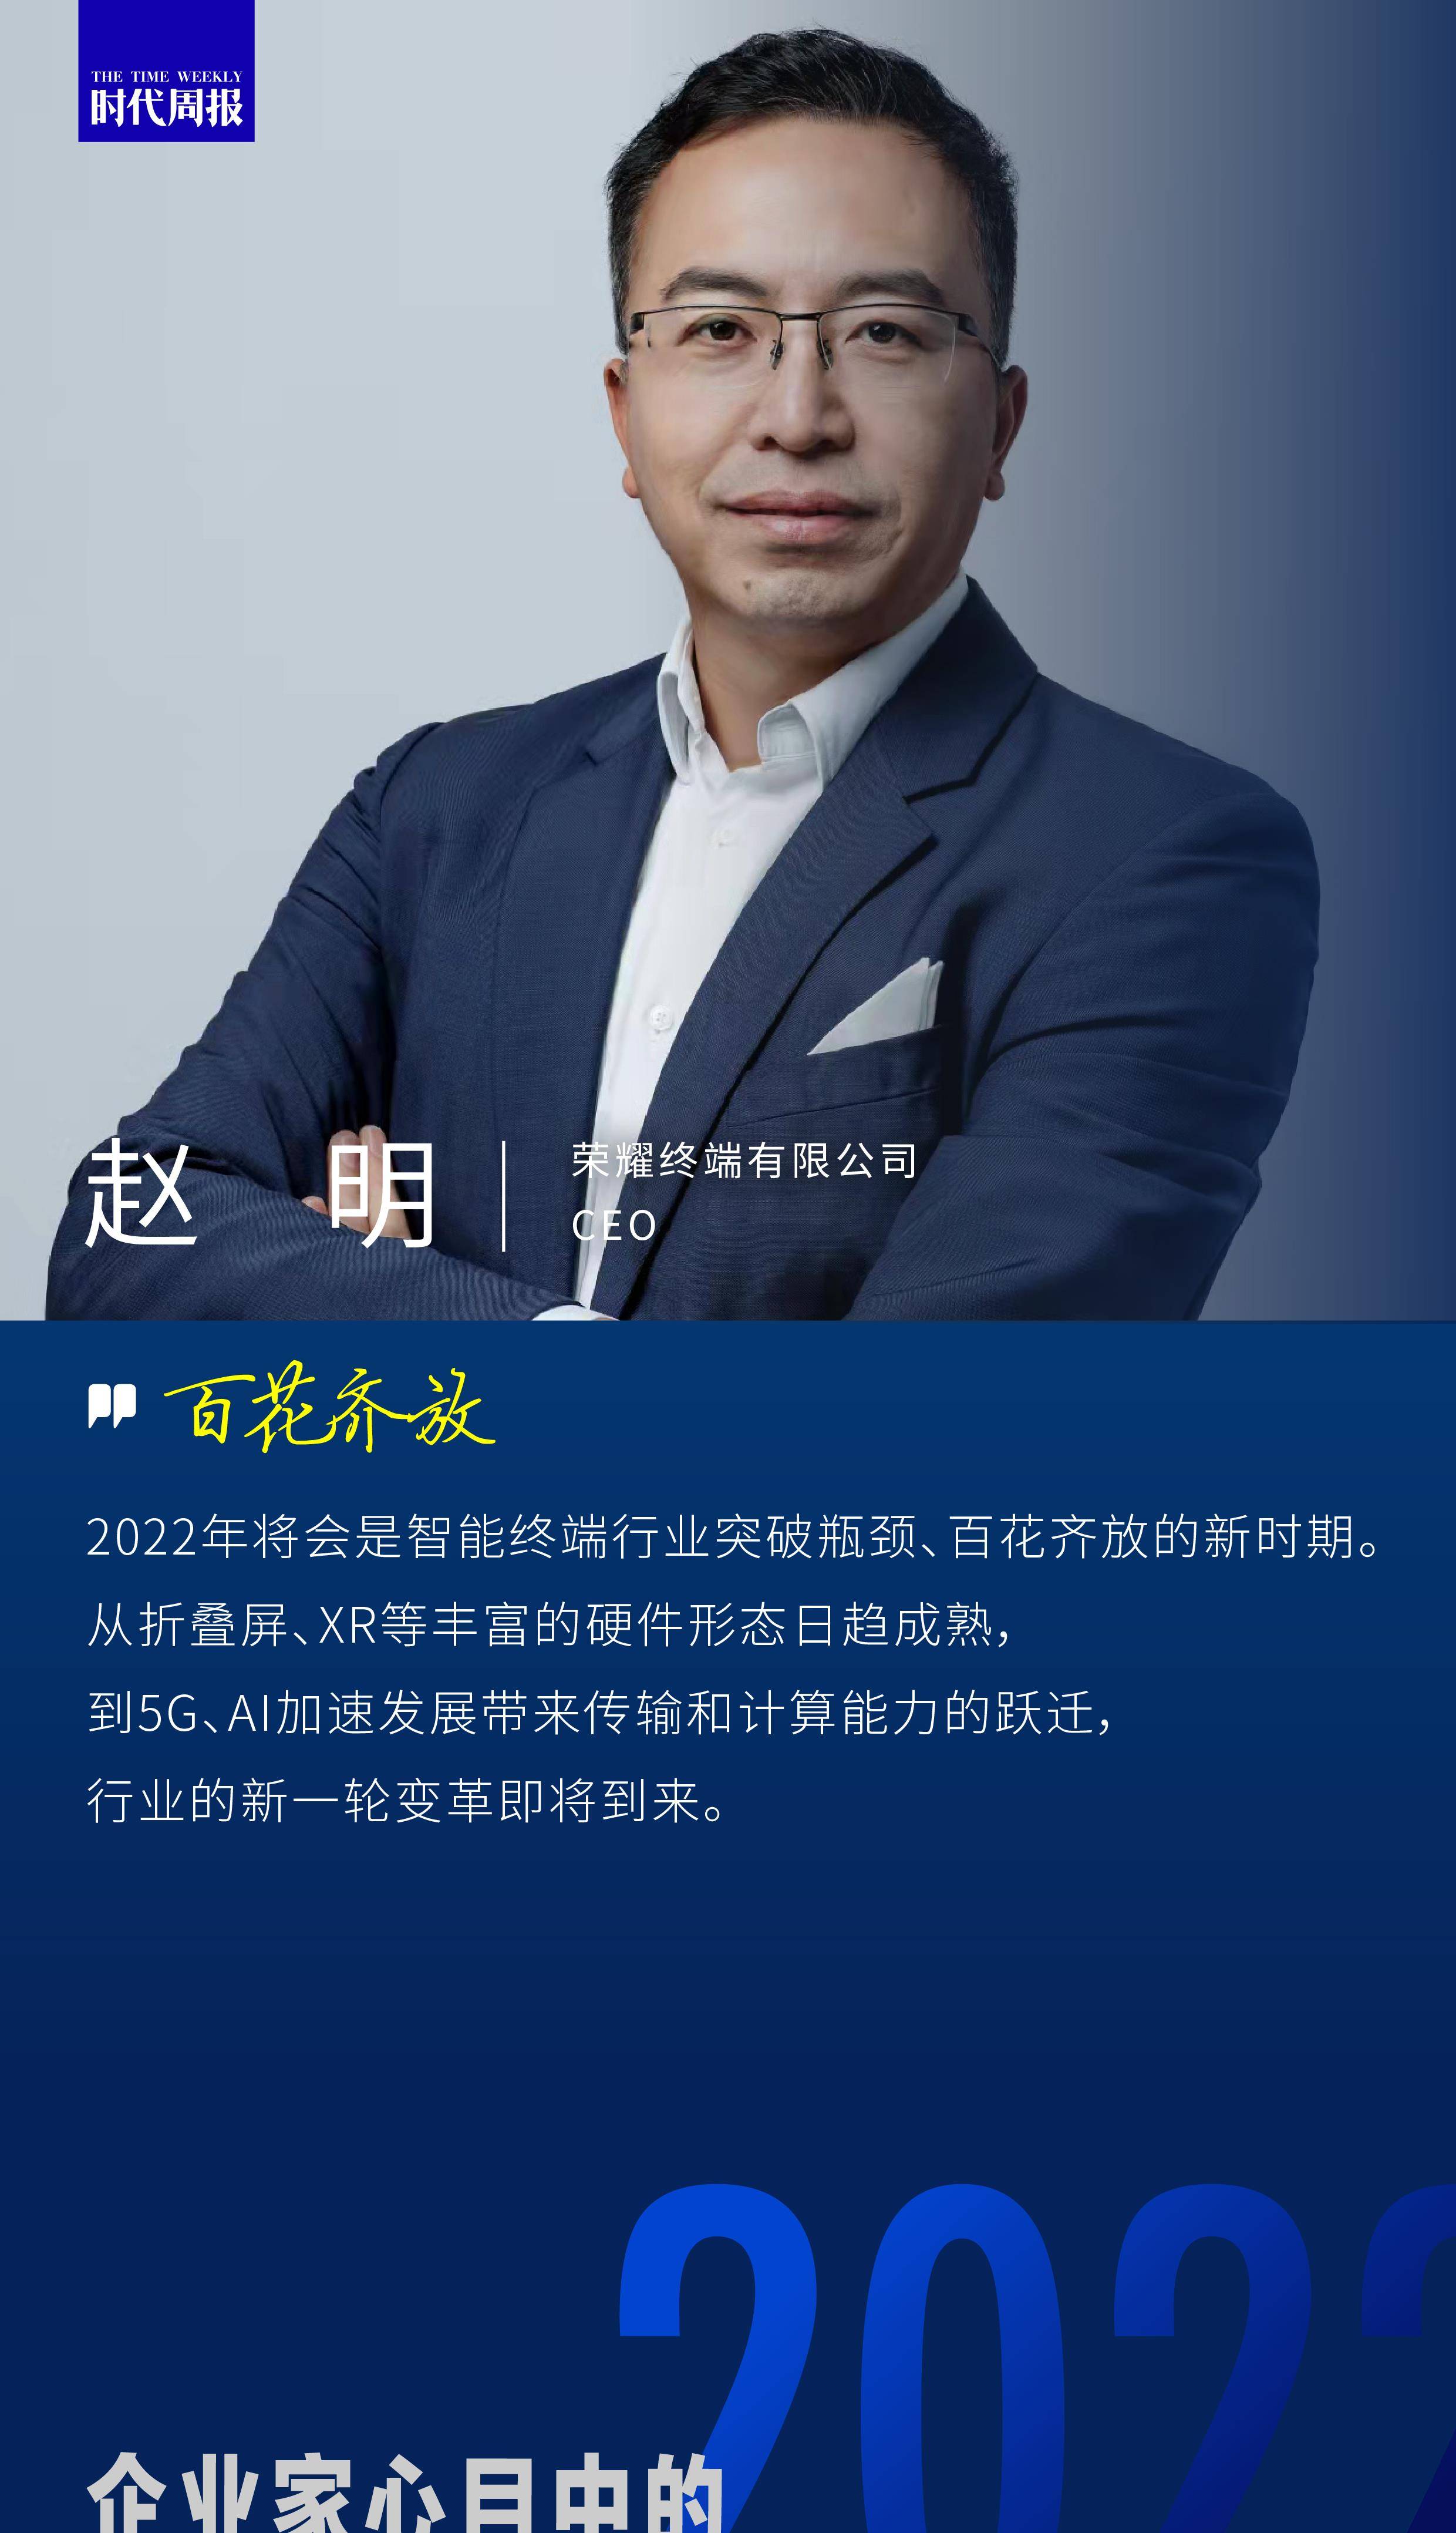 荣耀CEO赵明：智能终端行业将进一步突破瓶颈、百花齐放